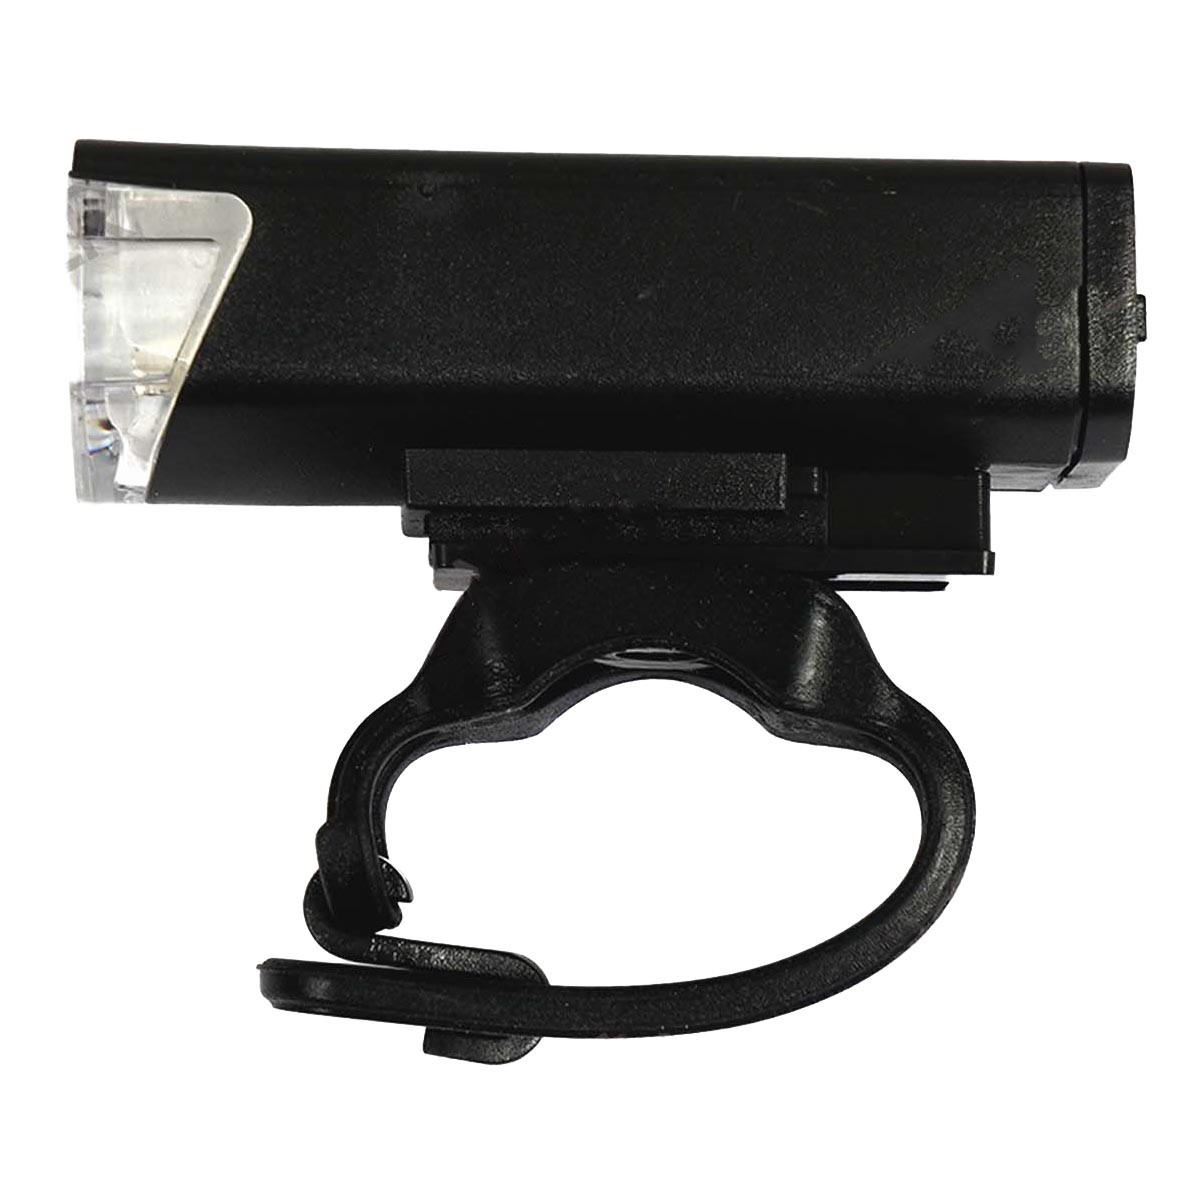 Imagen Luz LED Delantera Recargable USB Para Bicicleta 3